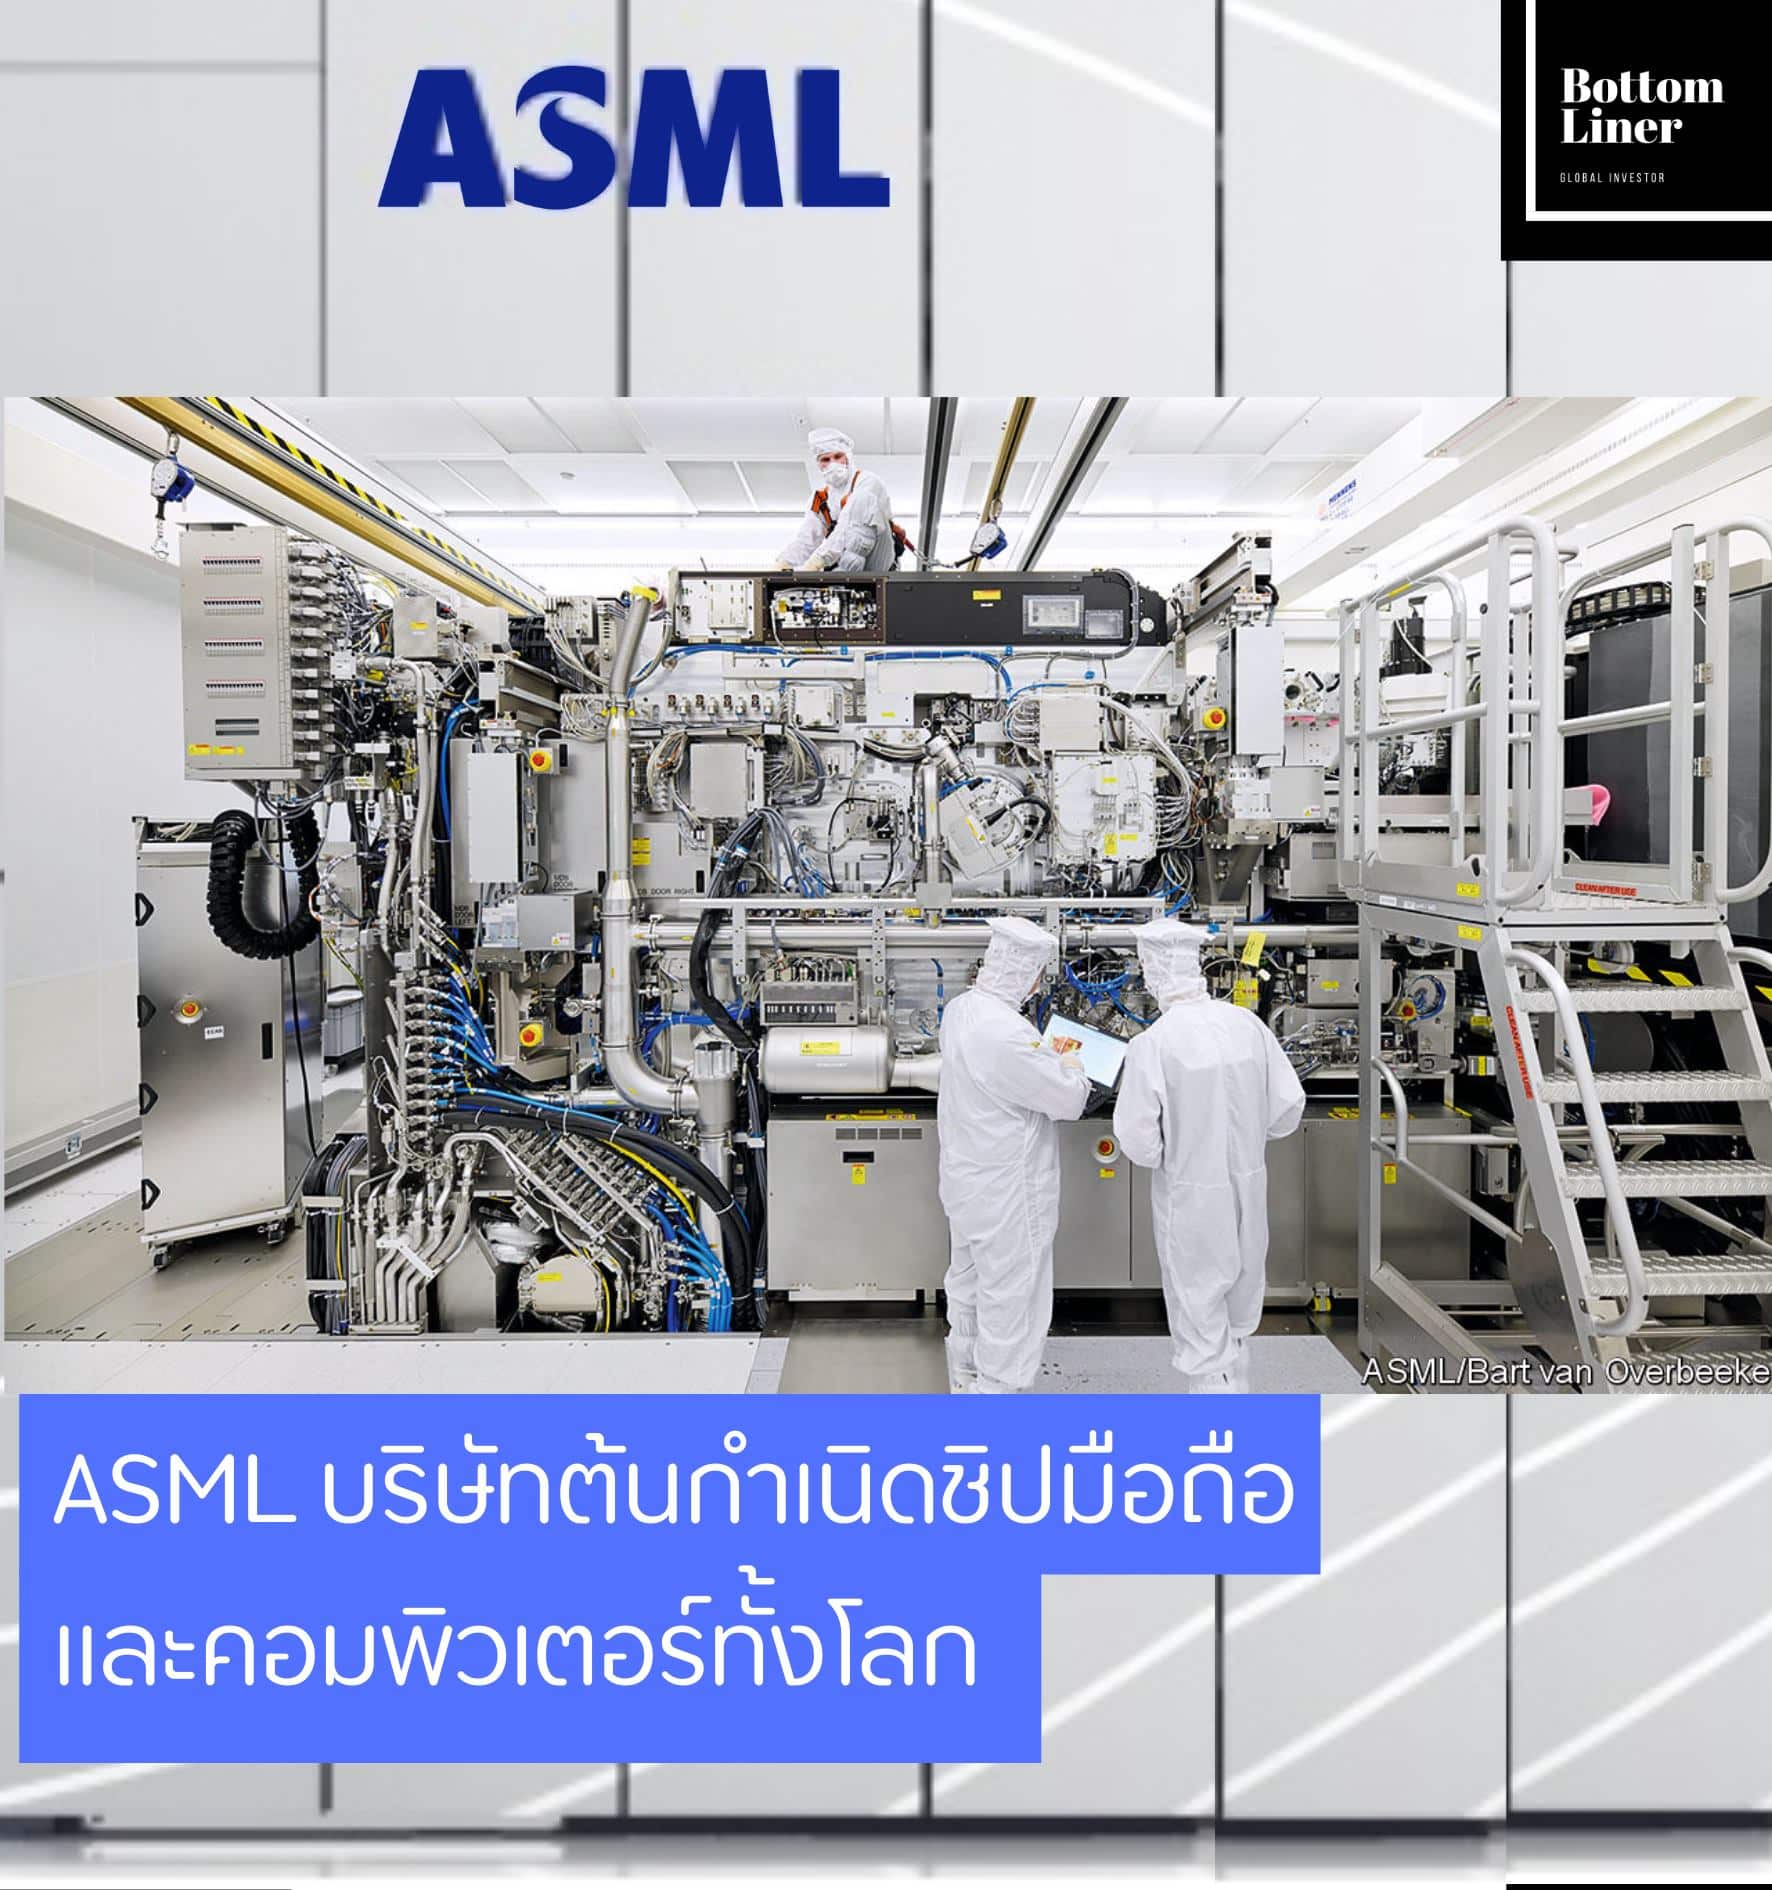 ASML บริษัทต้นกำเนิดชิปมือถือและคอมพิวเตอร์ทั้งโลก